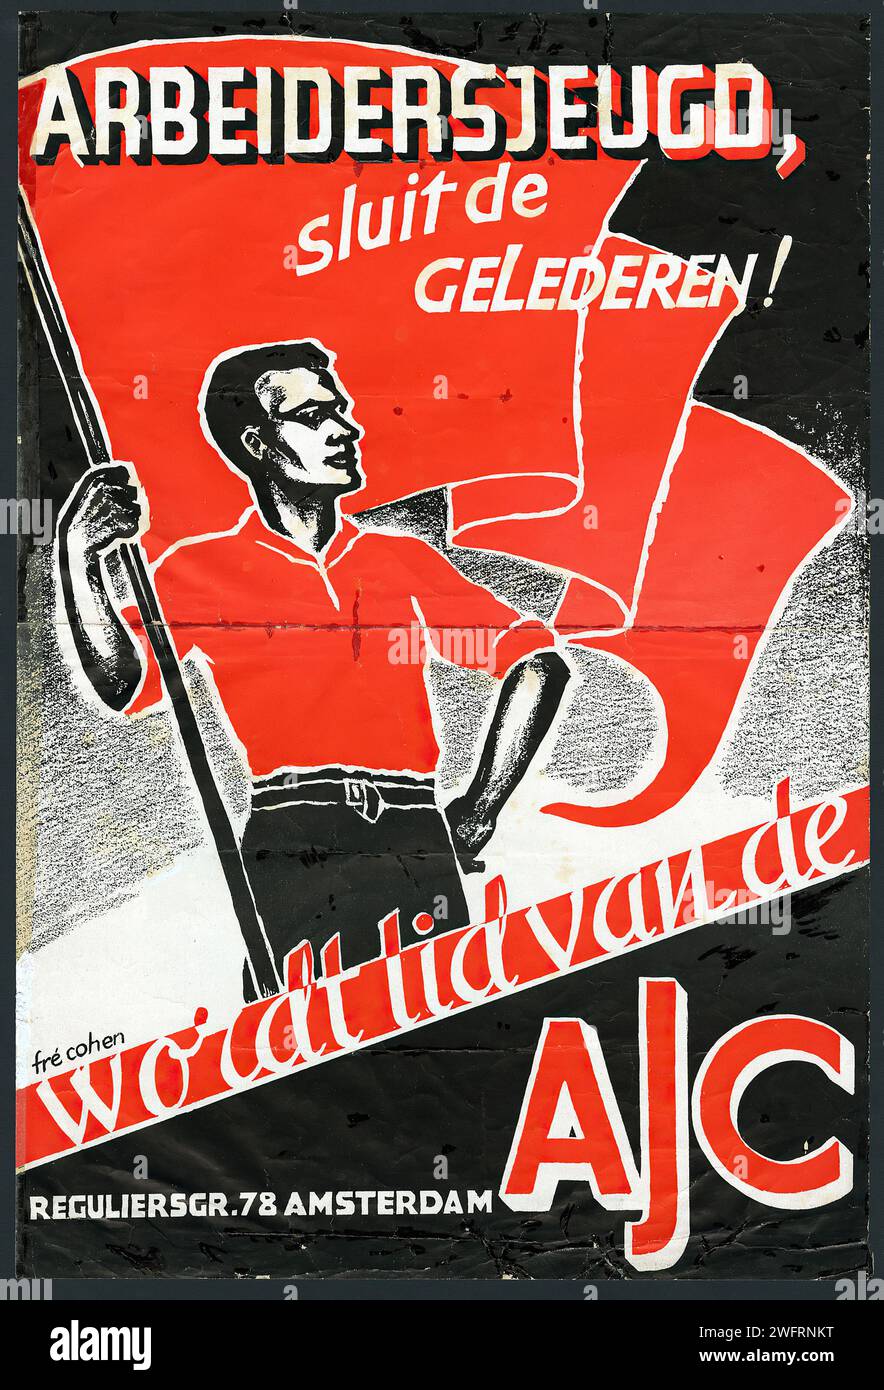 "ARBEIDERSJEUGD, SLUIT DE GELEDEREN!" Niederländische Vintage-Werbung. Ein politisches Jugendplakat mit einer rot-schwarzen Palette, auf dem ein junger Arbeiter vor einer Flagge steht. Der Stil erinnert an die Kunst des konstruktivistischen und sozialistischen Realismus, mit dem Ziel, die Jugend zu mobilisieren und zu vereinen. Stockfoto